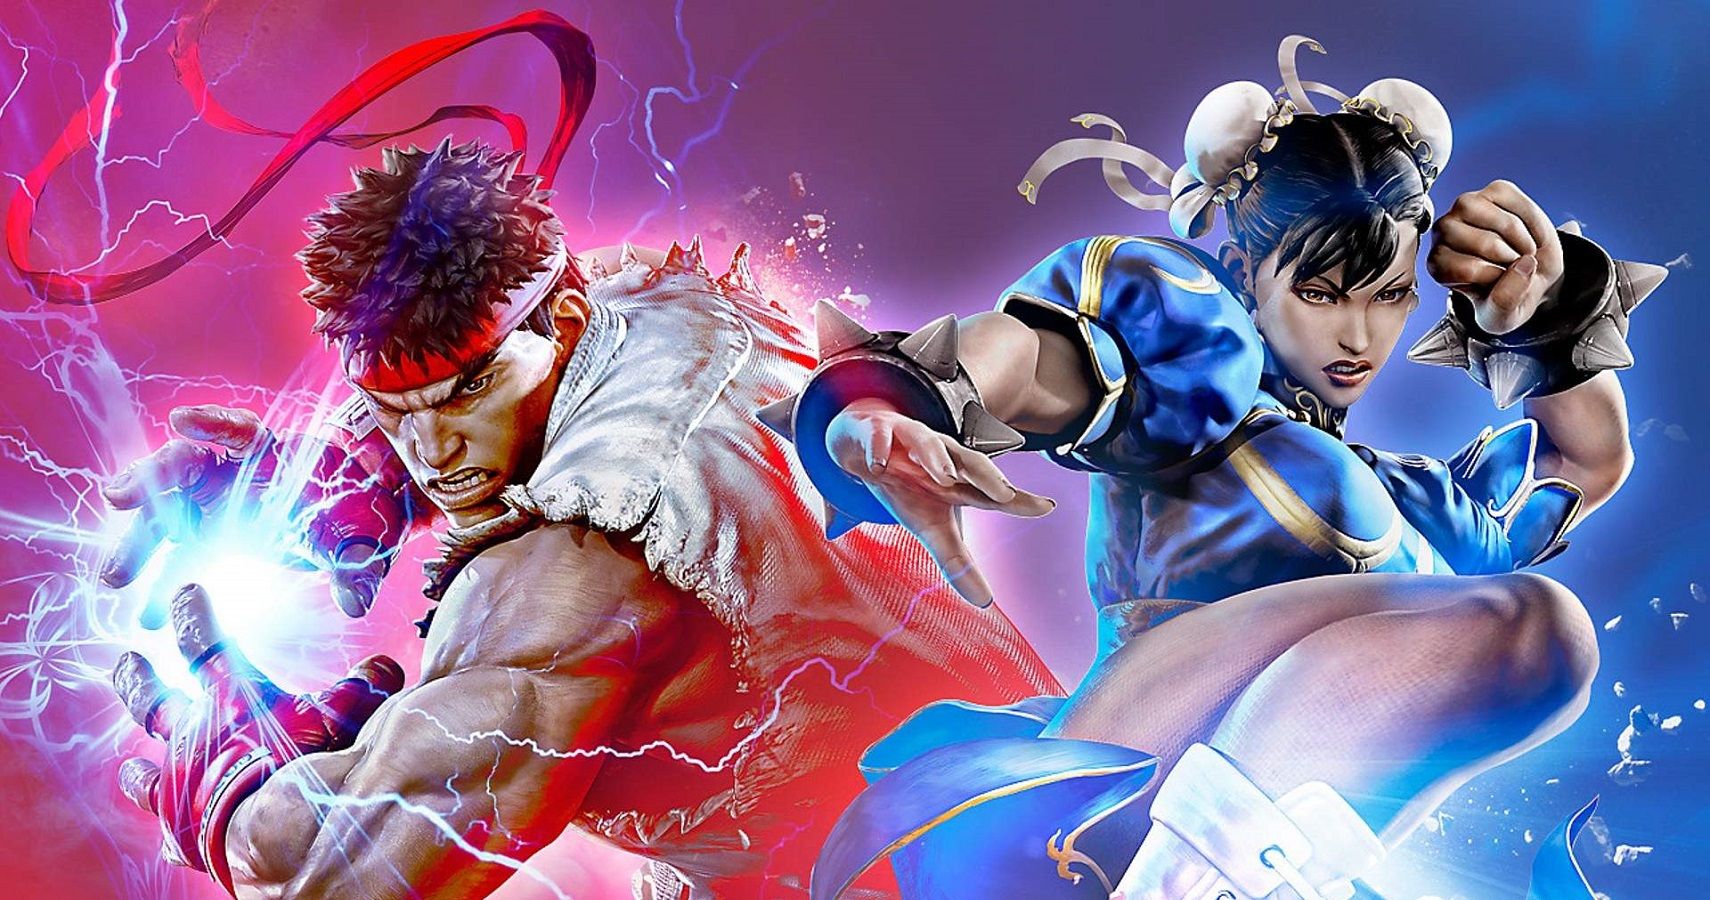 Ryu and Chun-Li in Street Fighter